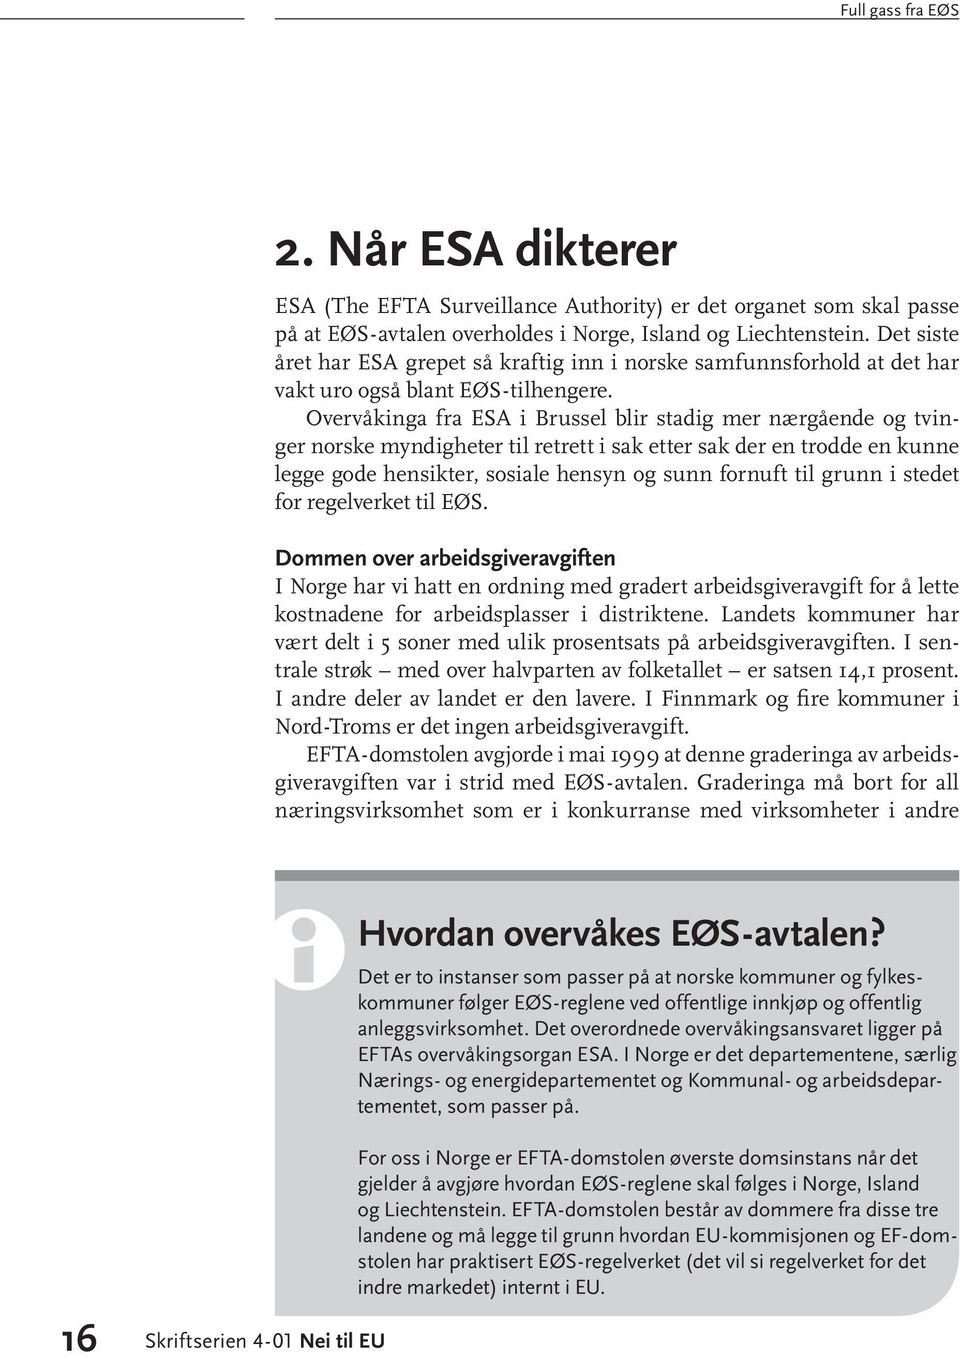 Overvåkinga fra ESA i Brussel blir stadig mer nærgående og tvinger norske myndigheter til retrett i sak etter sak der en trodde en kunne legge gode hensikter, sosiale hensyn og sunn fornuft til grunn